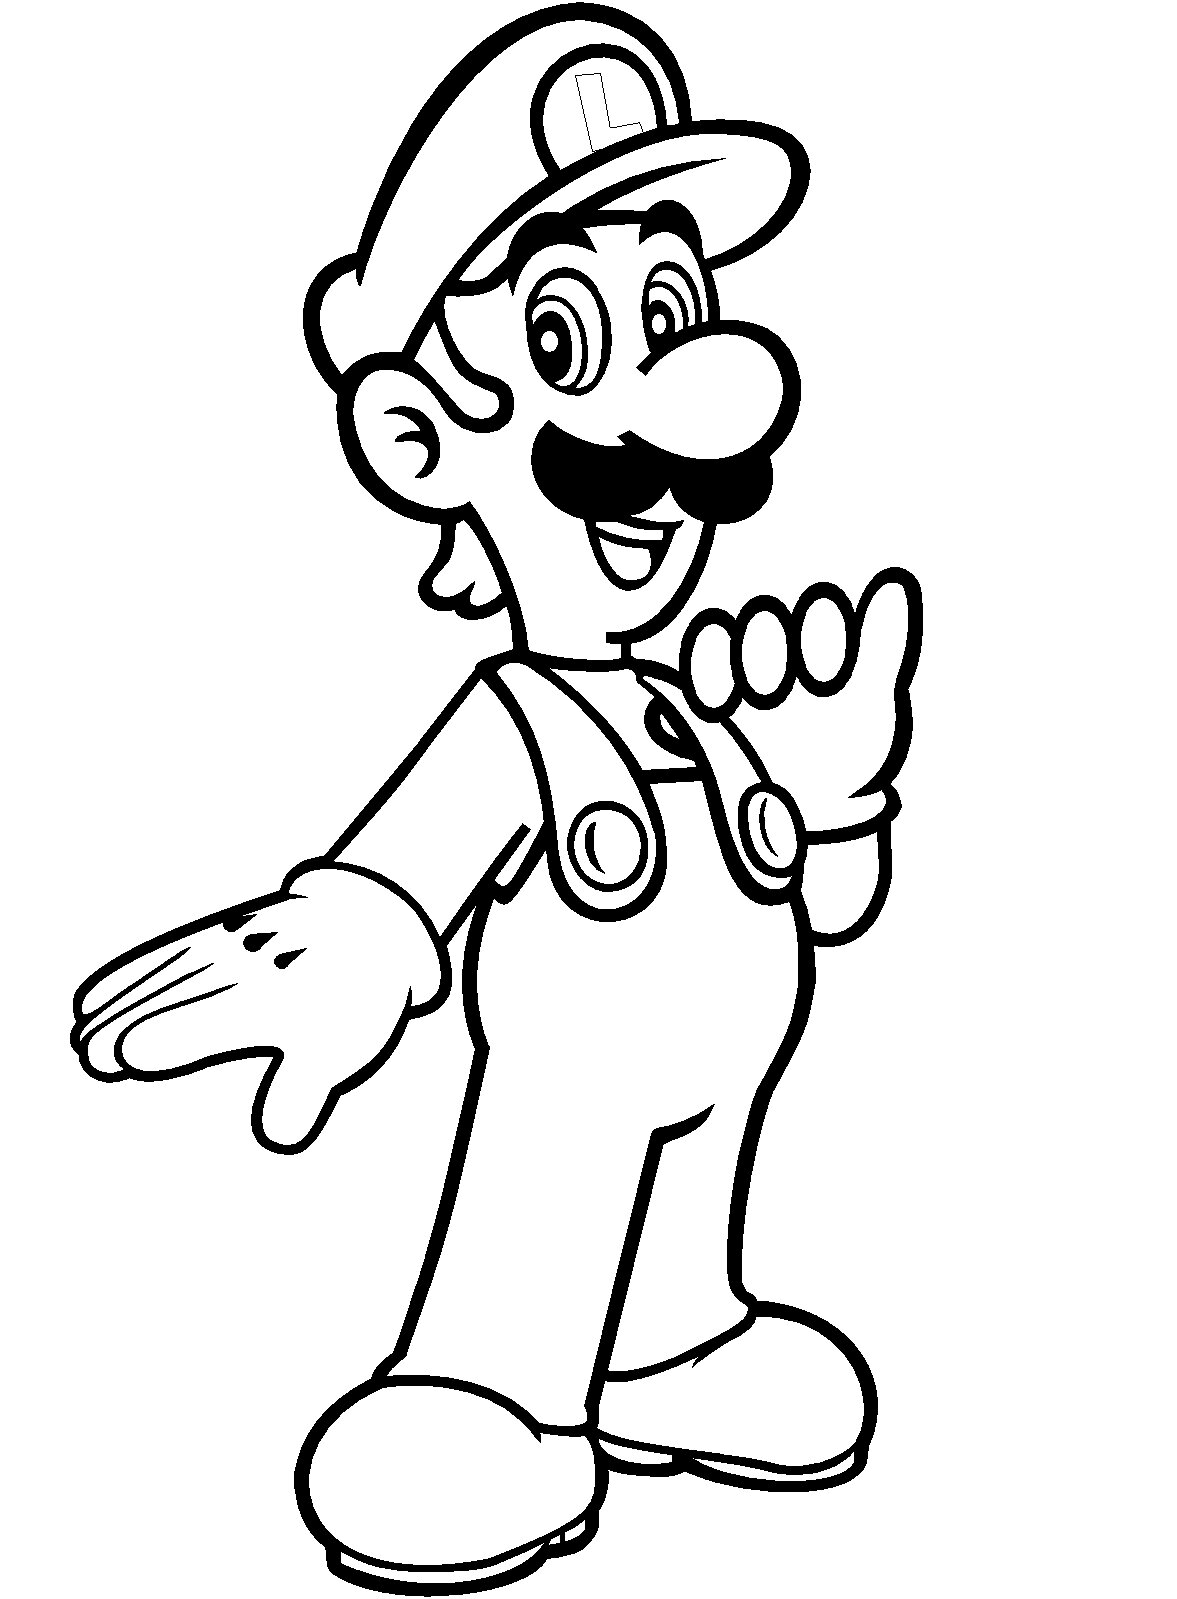 Luigi from Super Mario Bros from Luigi